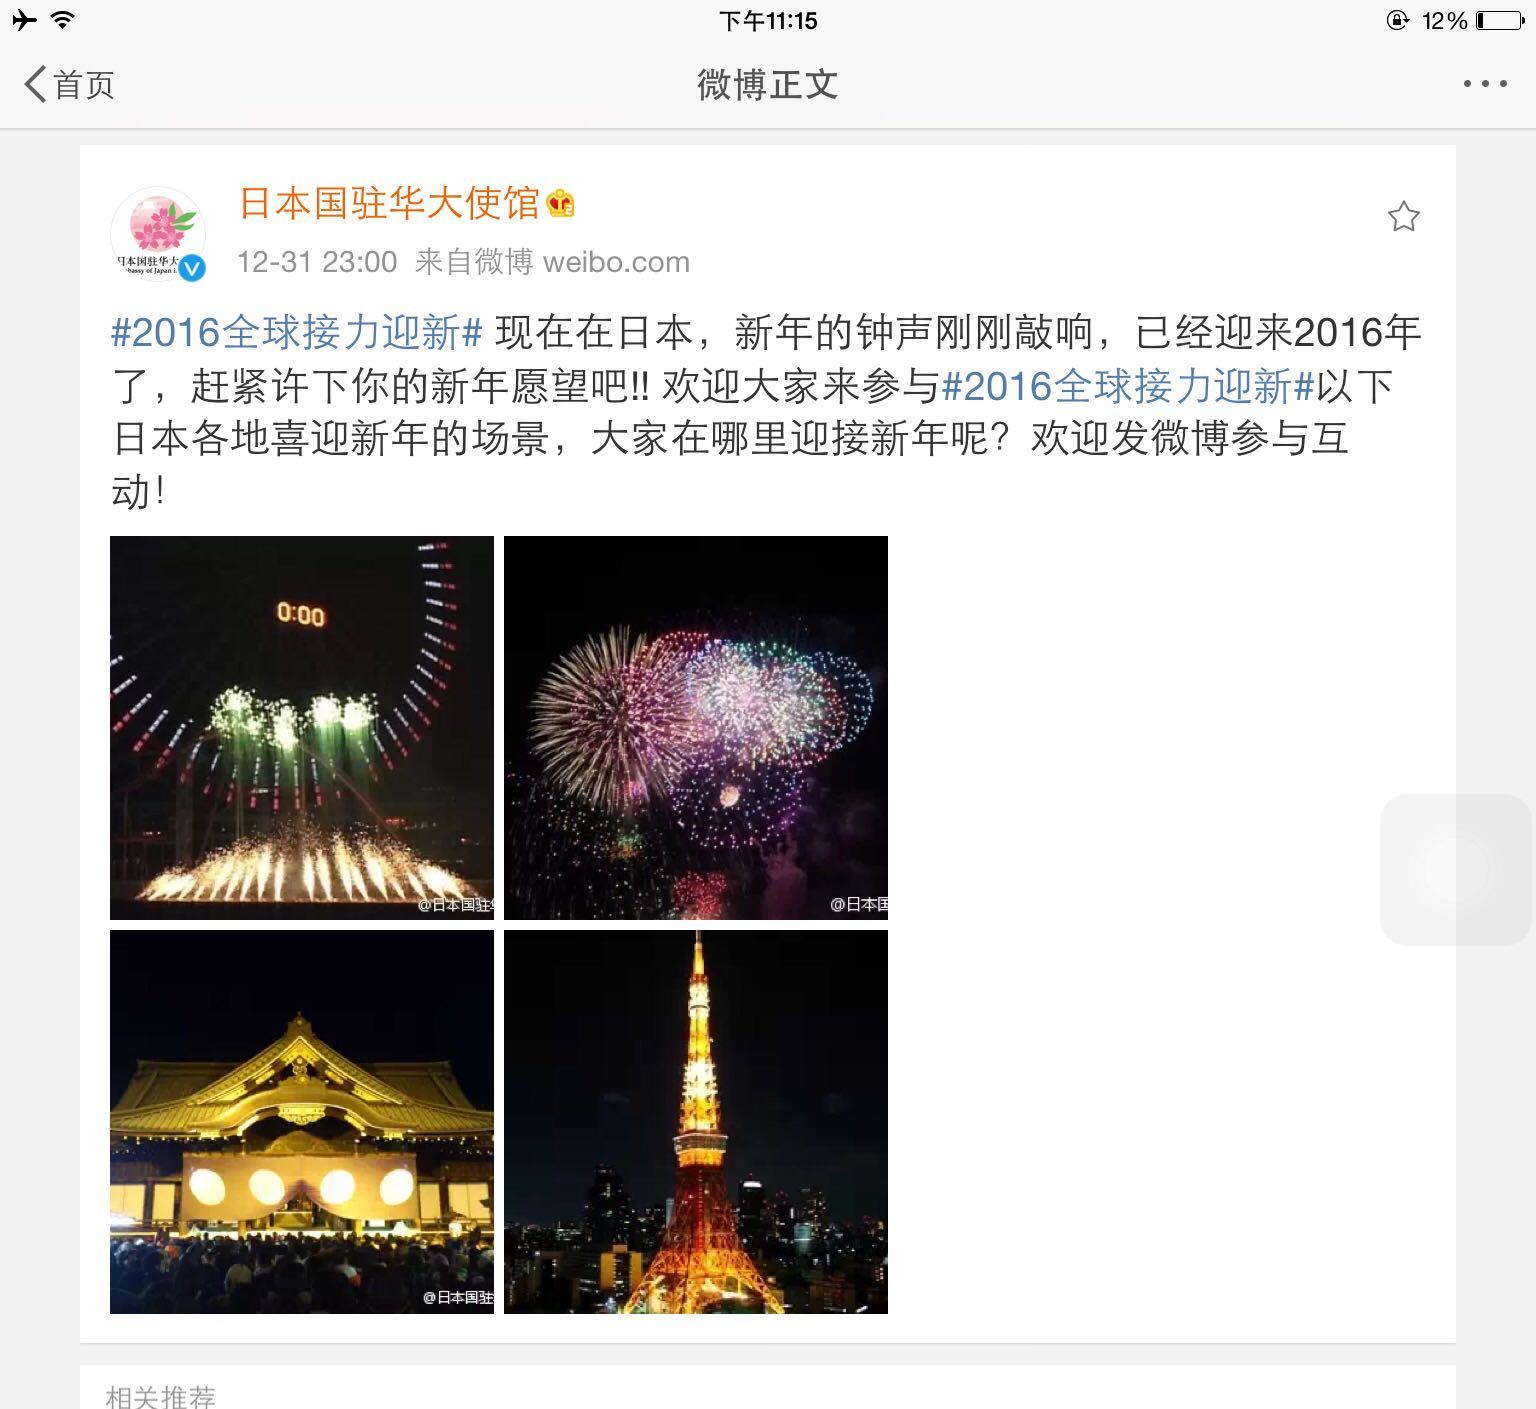 如何看待日本驻华使馆庆祝元旦的微博中带有靖